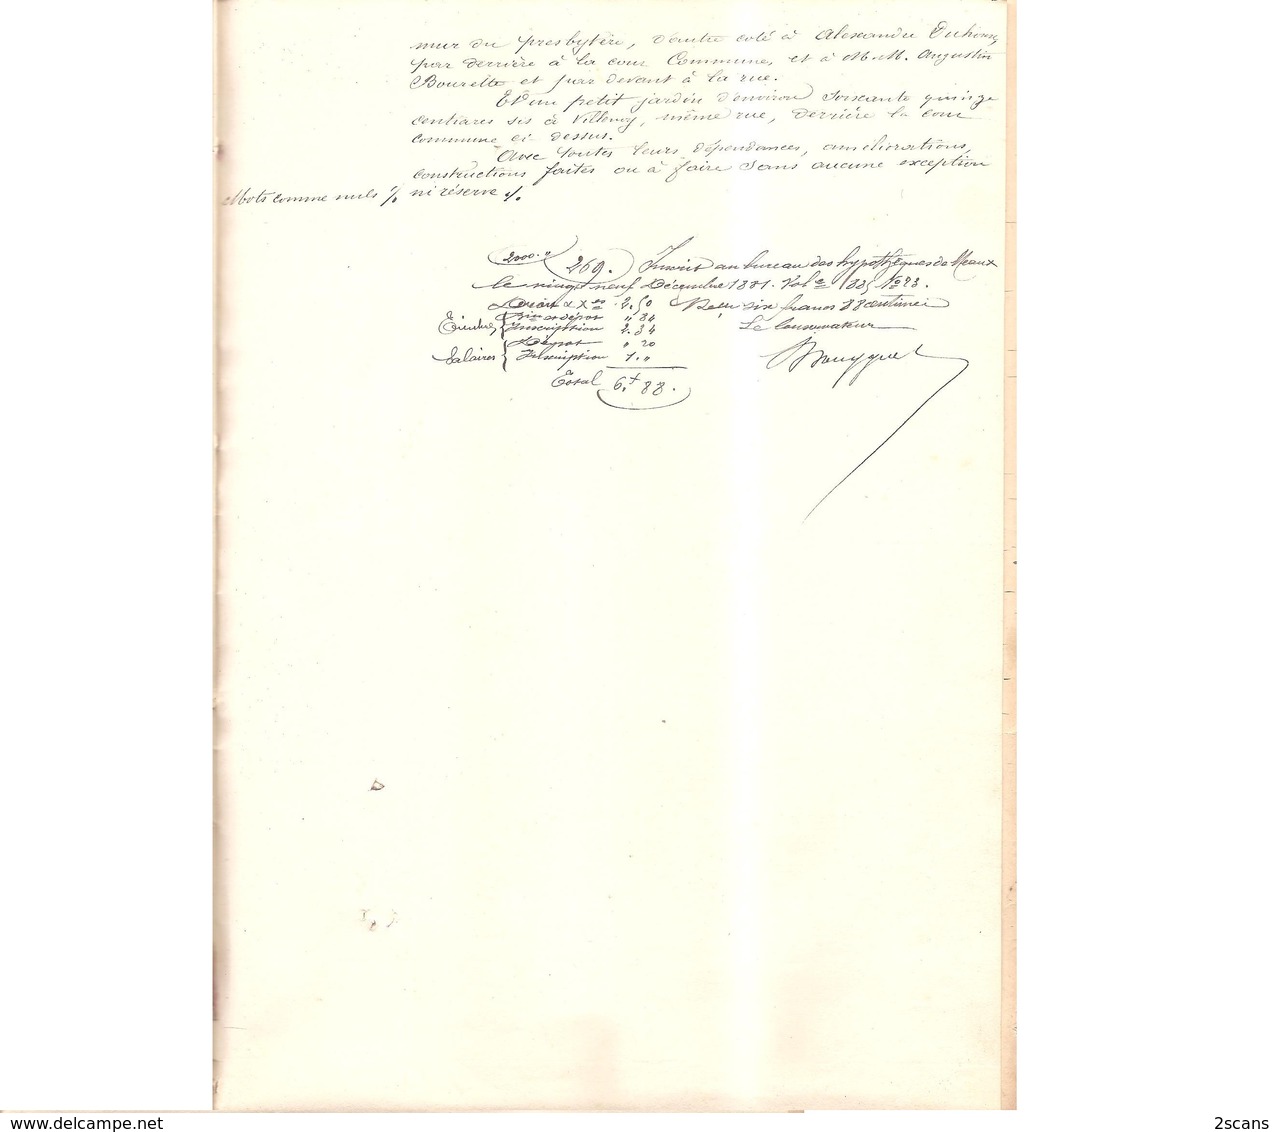 77 - VILLENOY - Obligation par Mme Vve OUBRON (née DUHOUX) et M. et Mme Louis OUBRON, à M. M. Charles et Henri BOURETTE